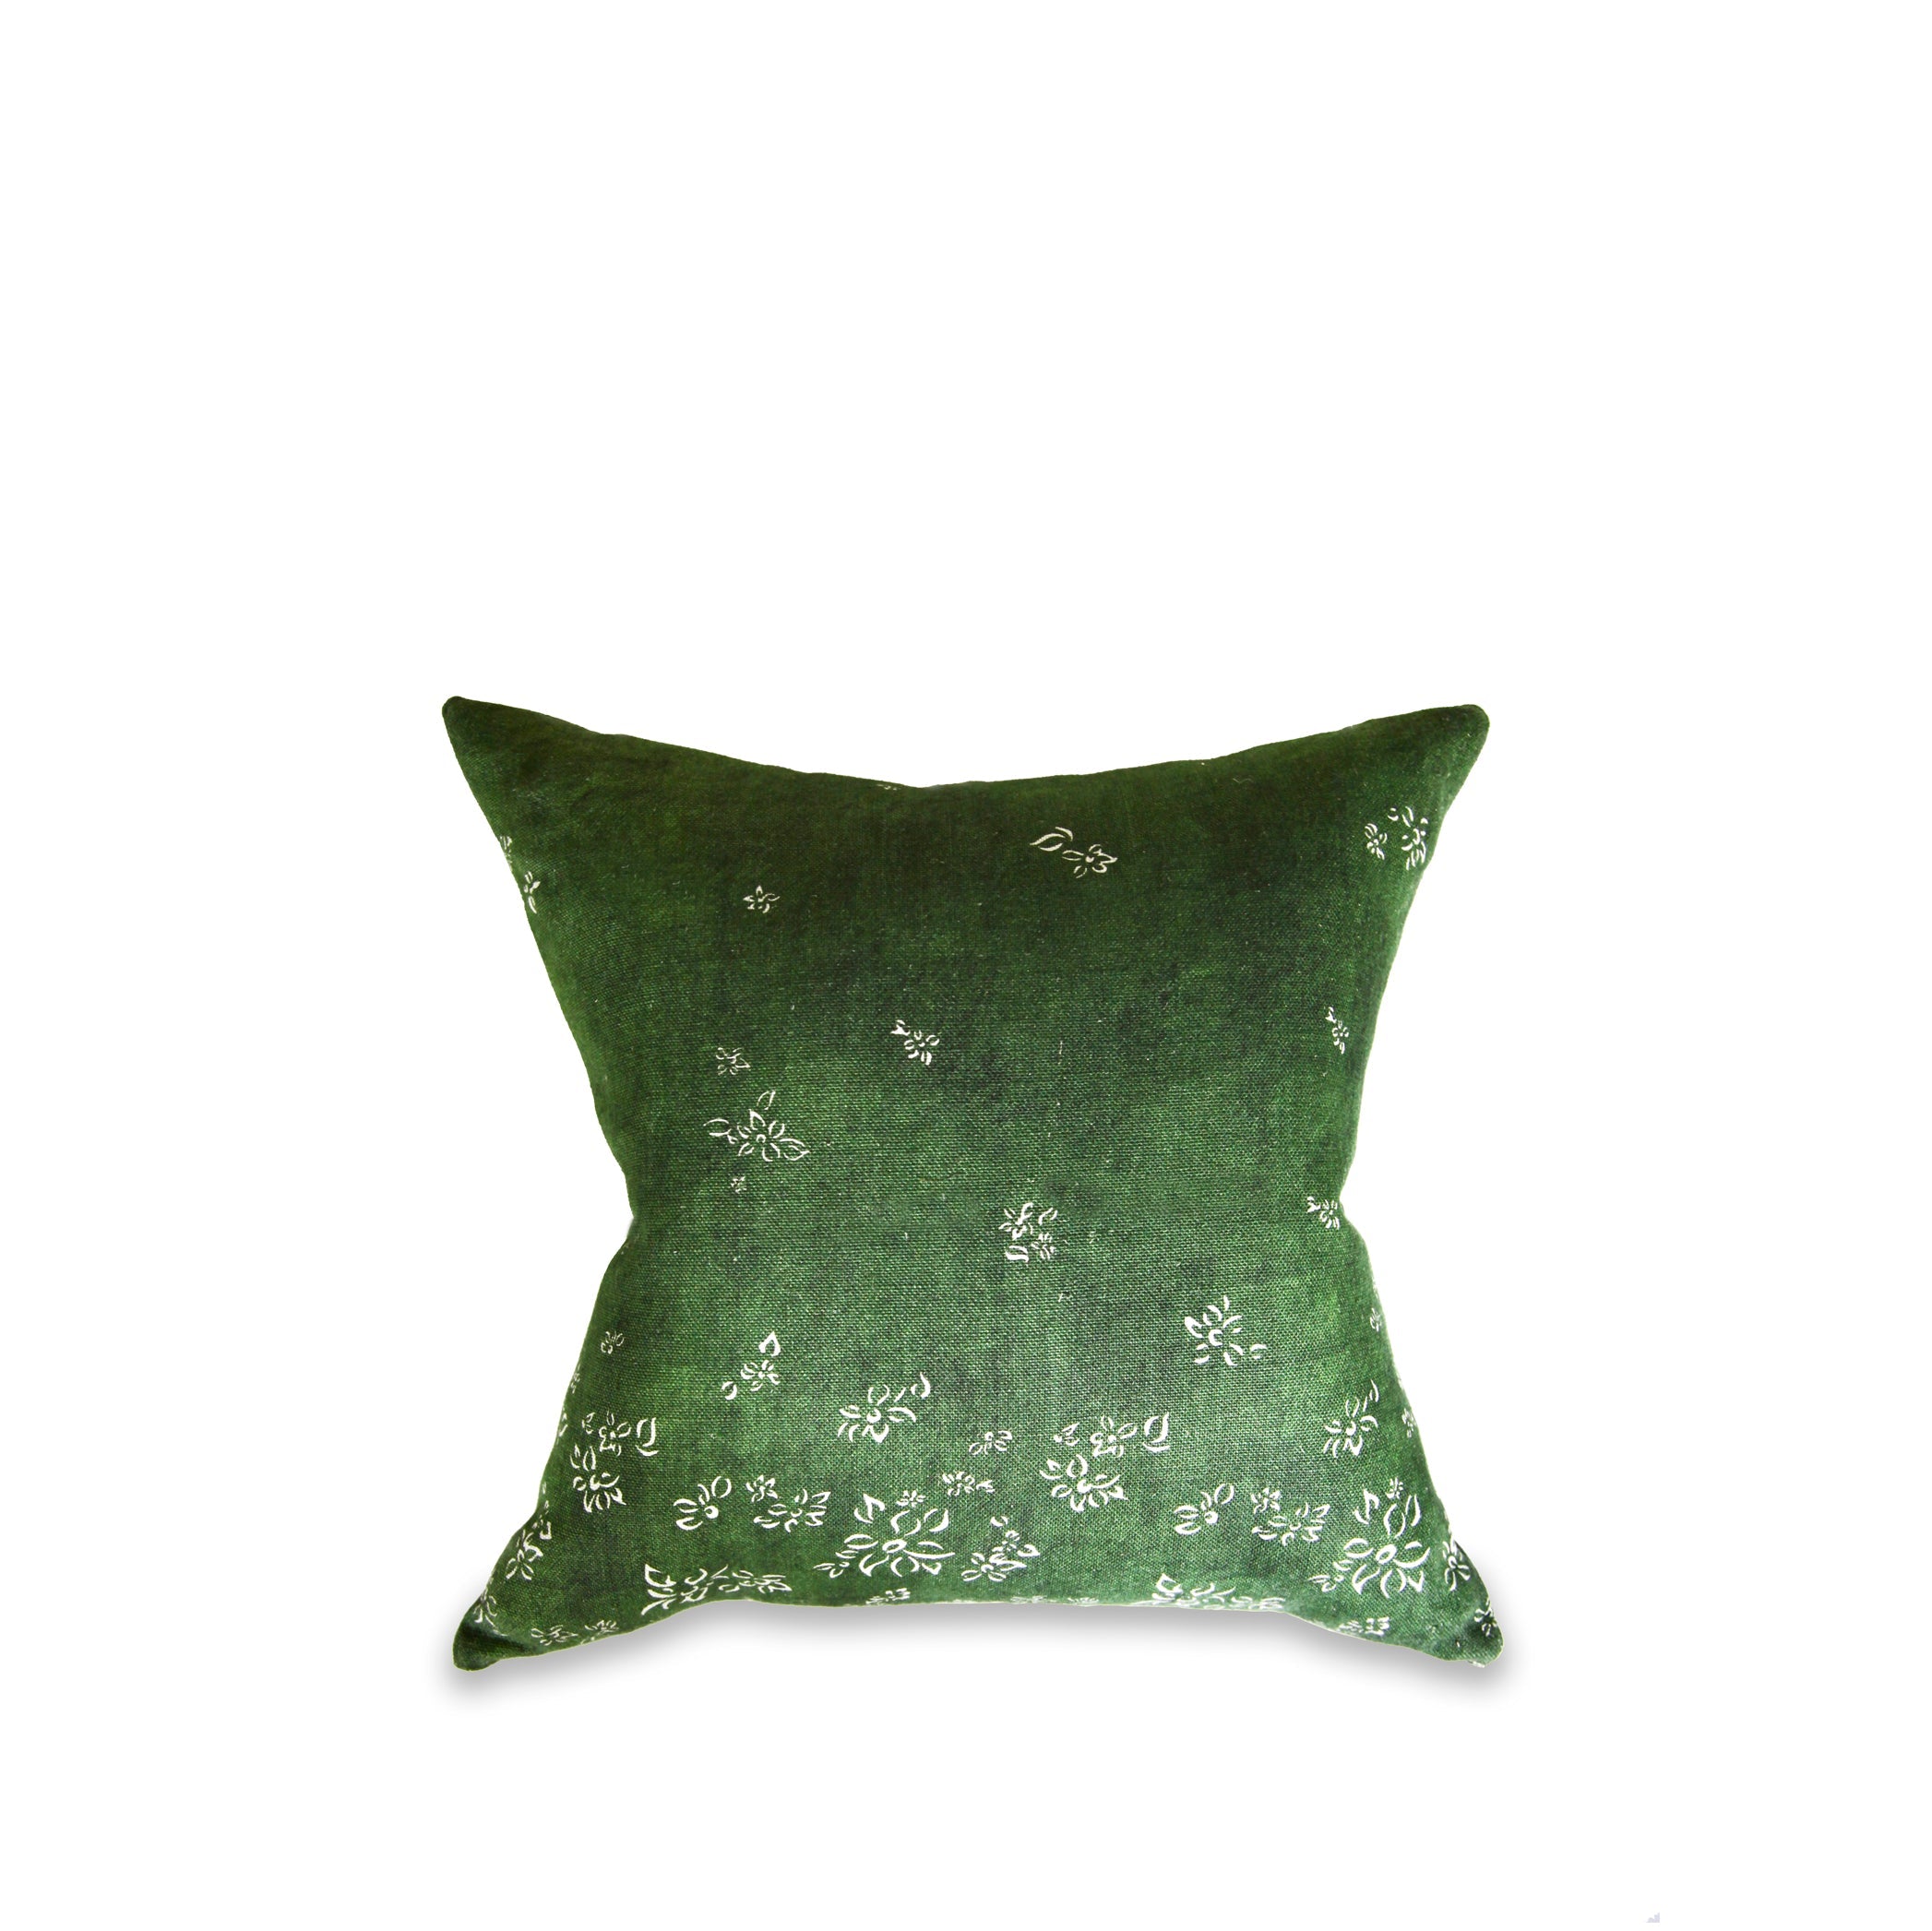 Heavy Linen Falling Flower Cushion in Full Field Green, 50cm x 50cm